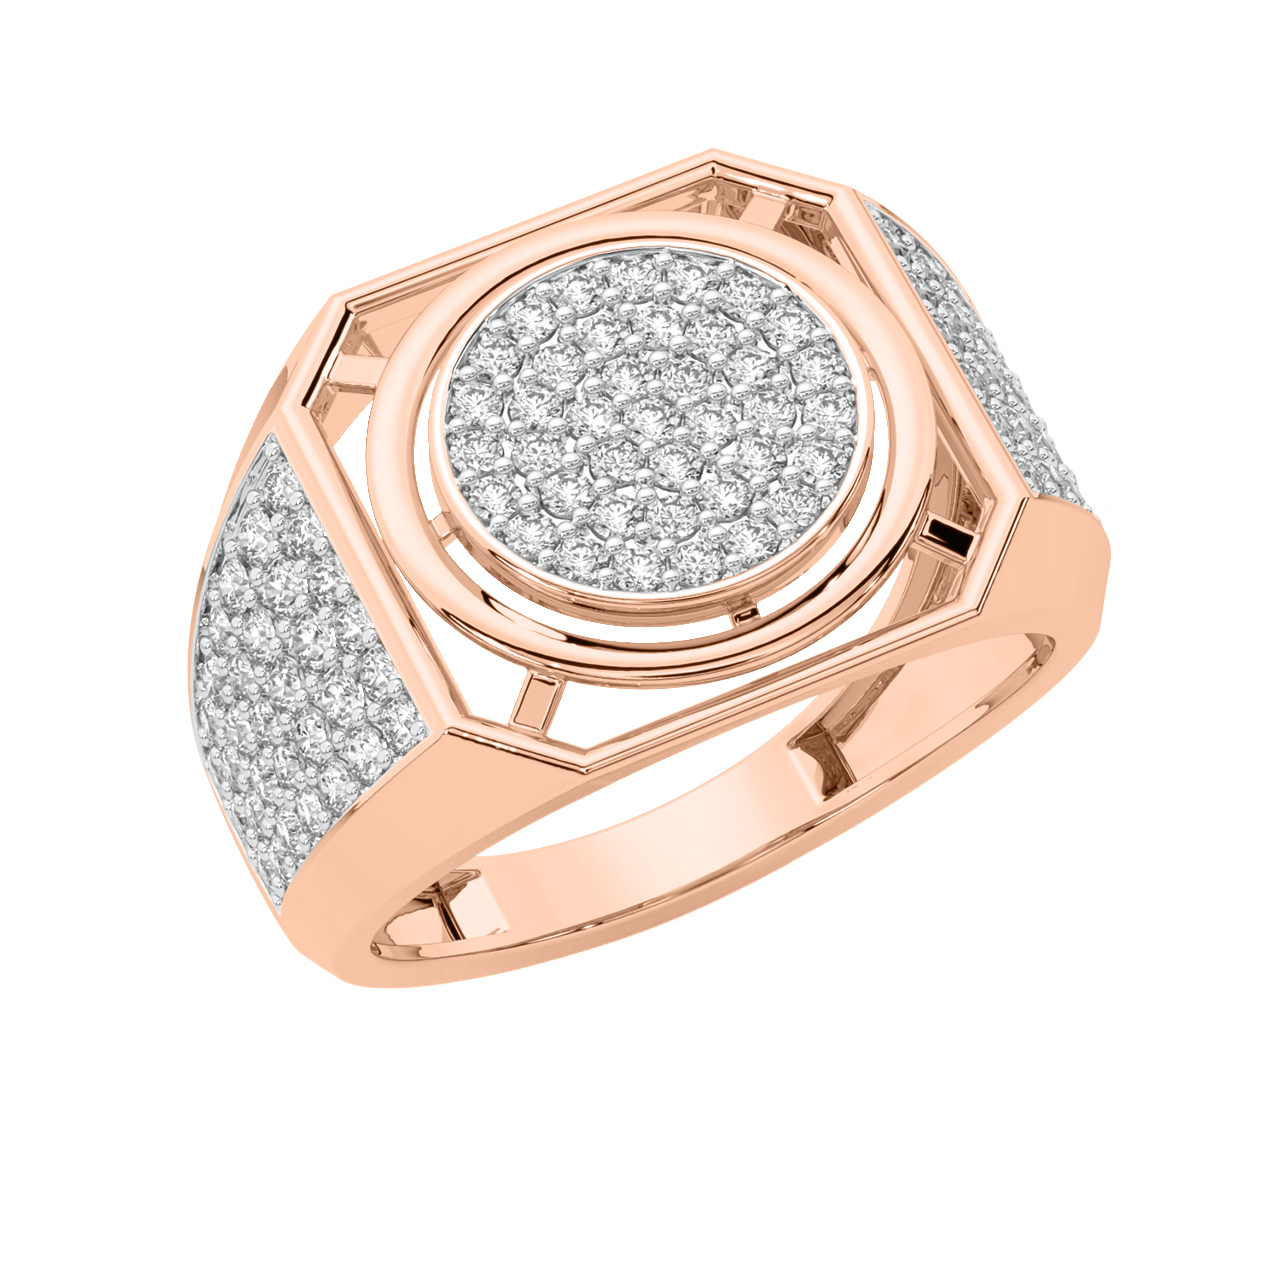 The Stunning Design Ring For Men